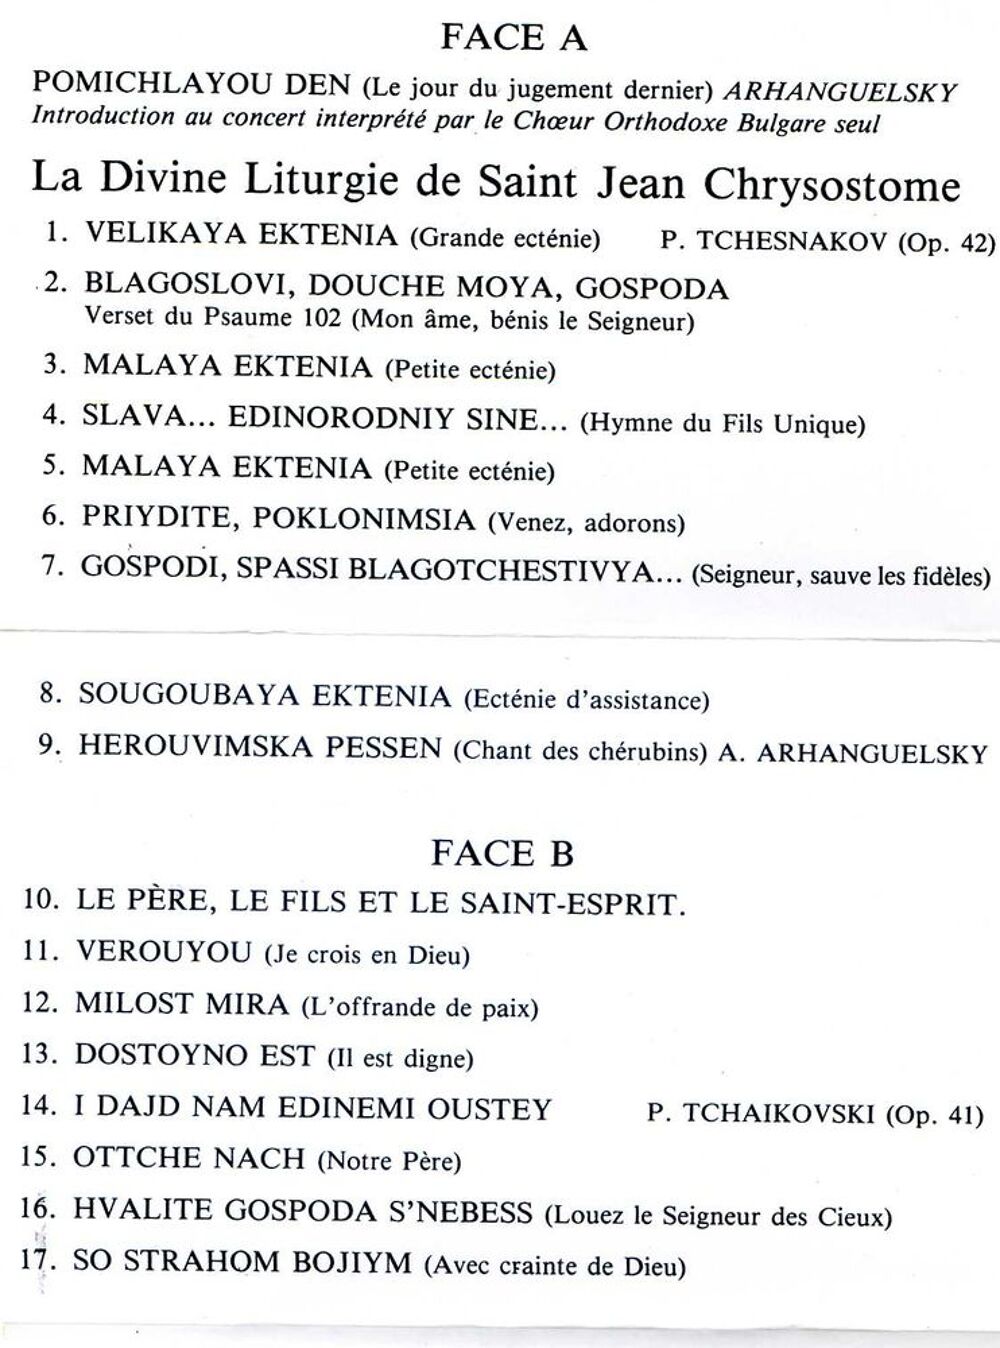 La divine liturgie de ST JEAN CHRYSOSTOME, CD et vinyles